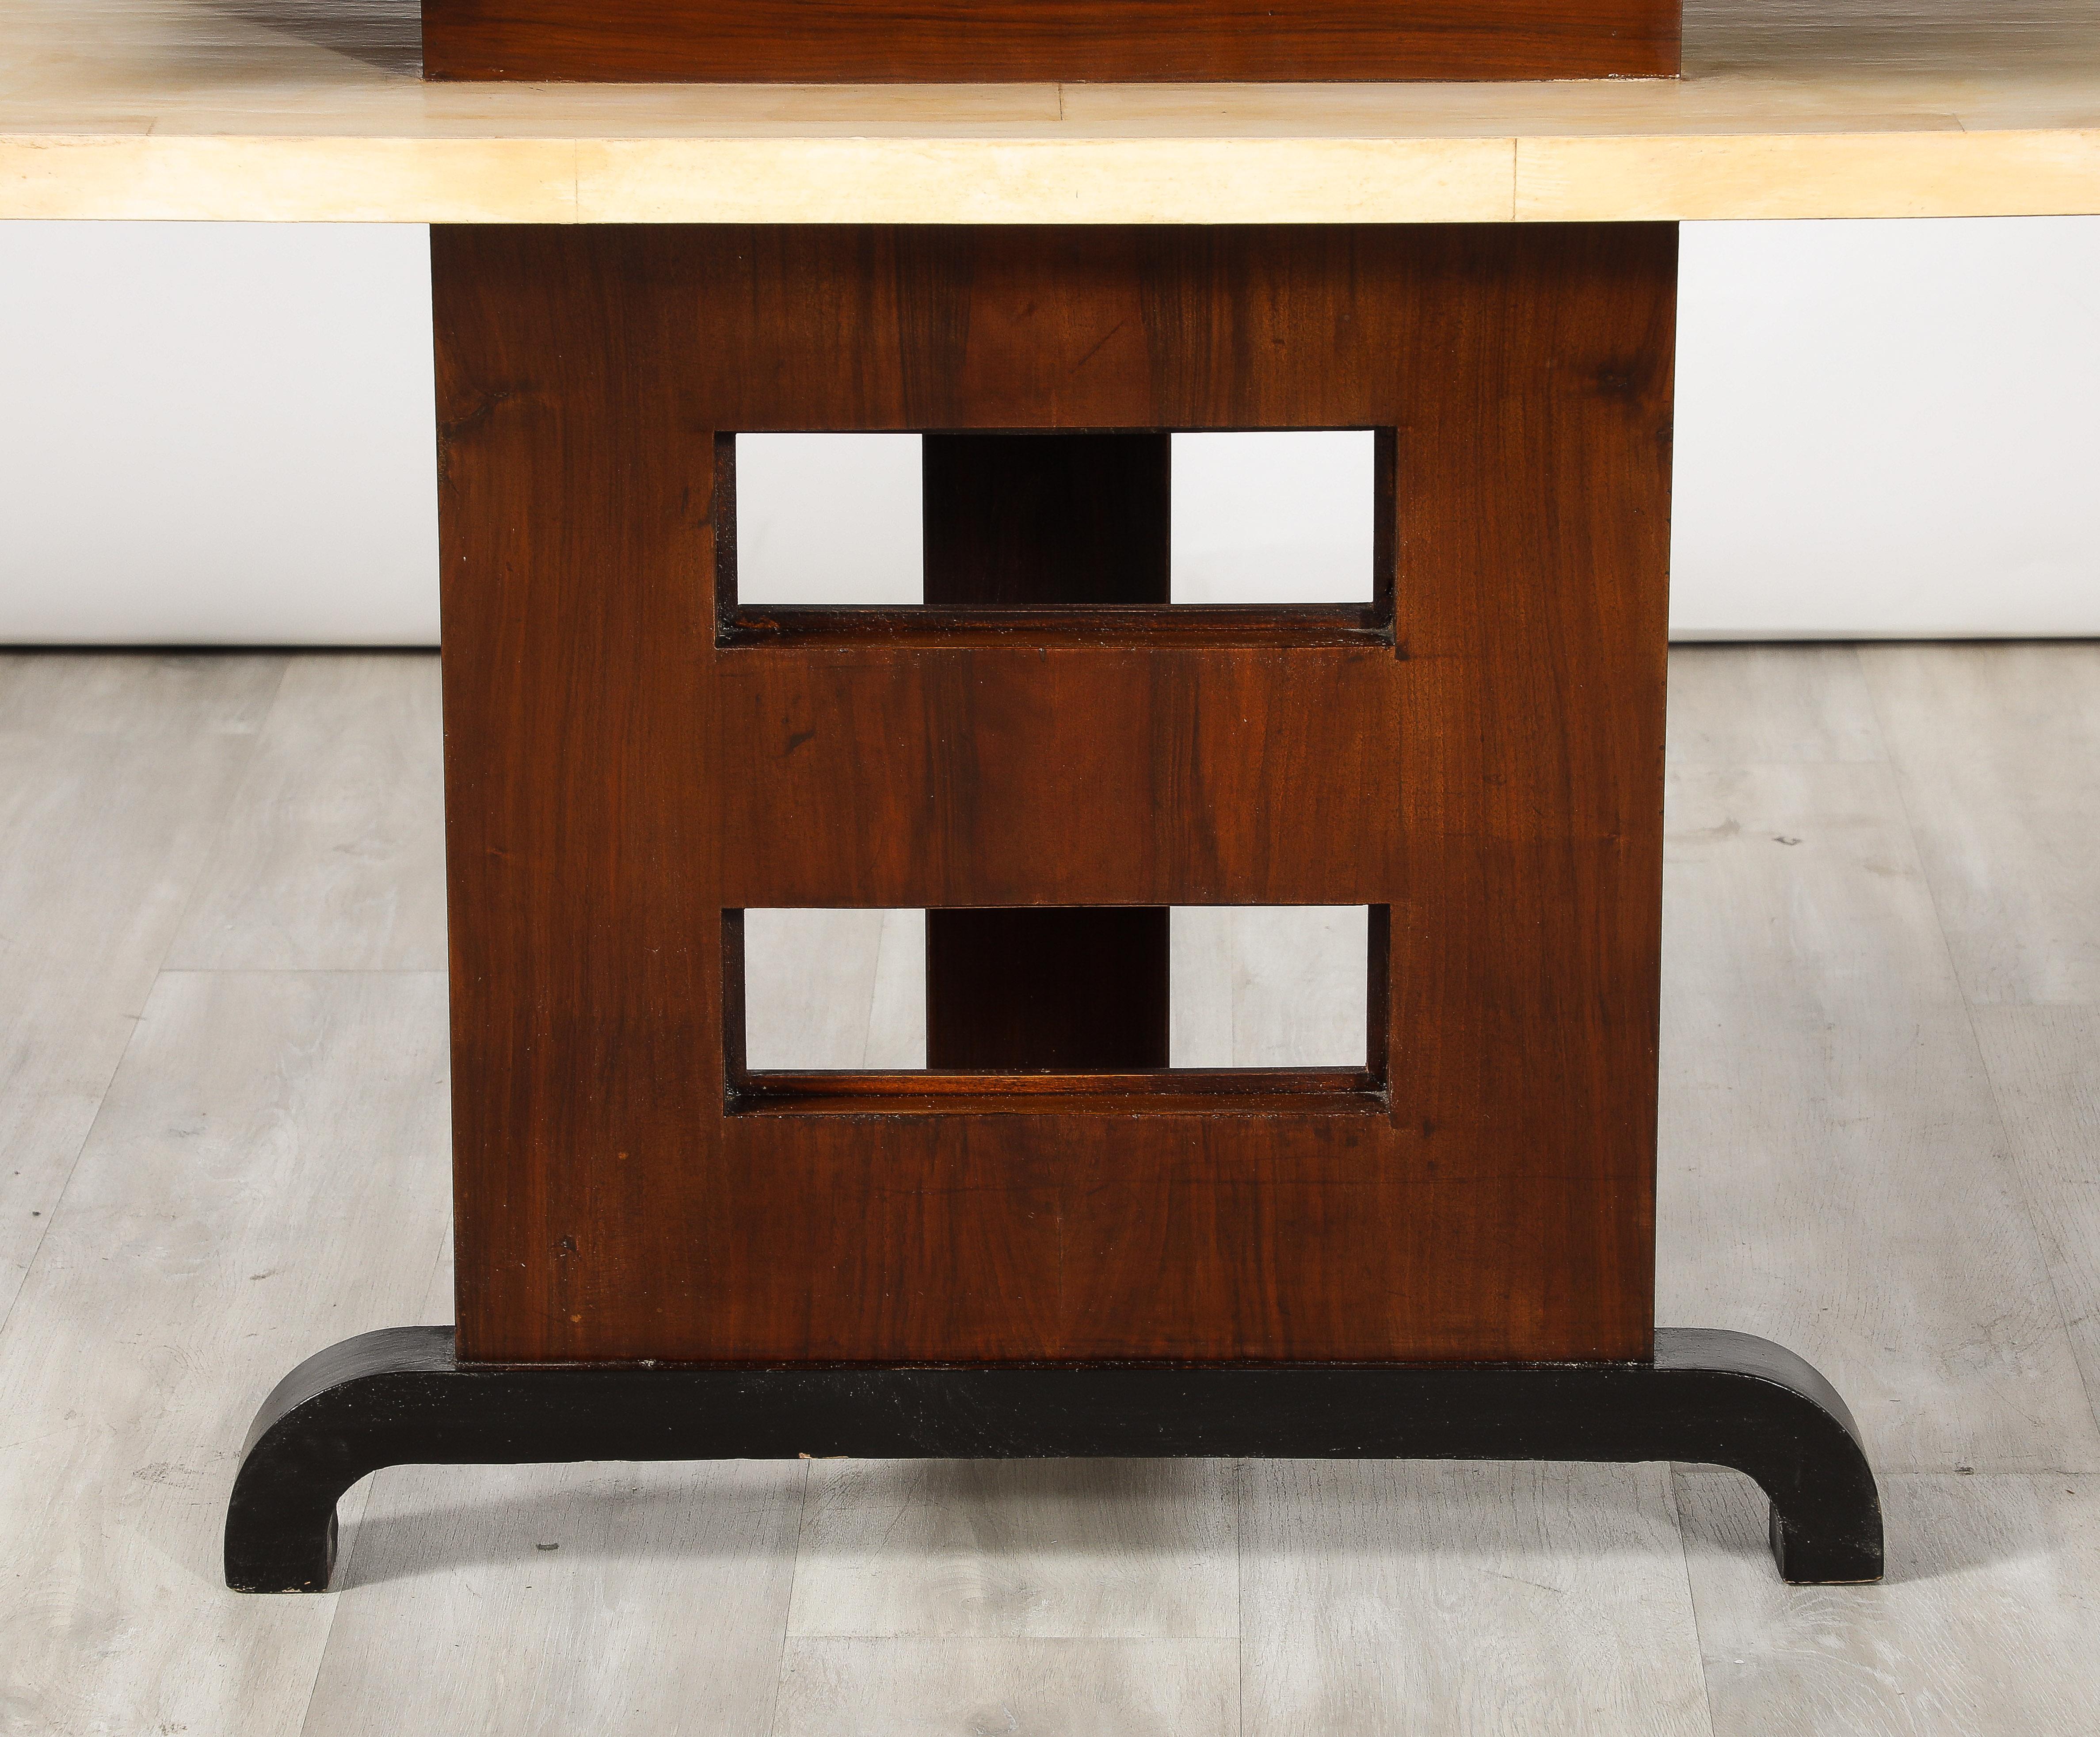 Console italienne Art déco avec deux étagères supérieures en Vellum soutenues par une base rectangulaire en bois de palissandre avec des découpes carrées.  La colonne centrale et la base angulaire sont ébonisées.  L'utilisation du vélin, du